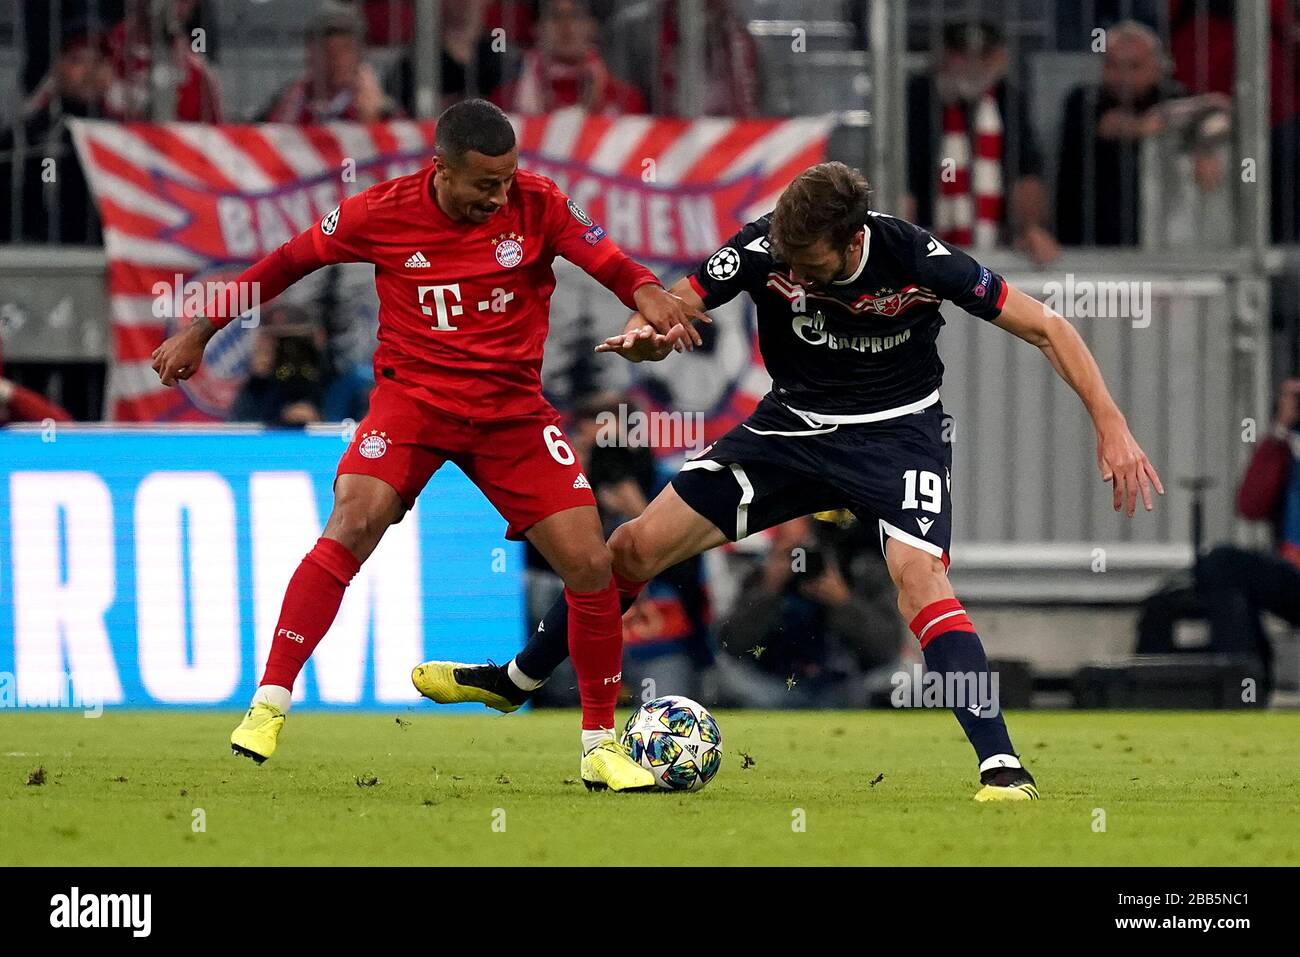 Red Star expert previews Bayern Munich vs Crvena zvezda in the